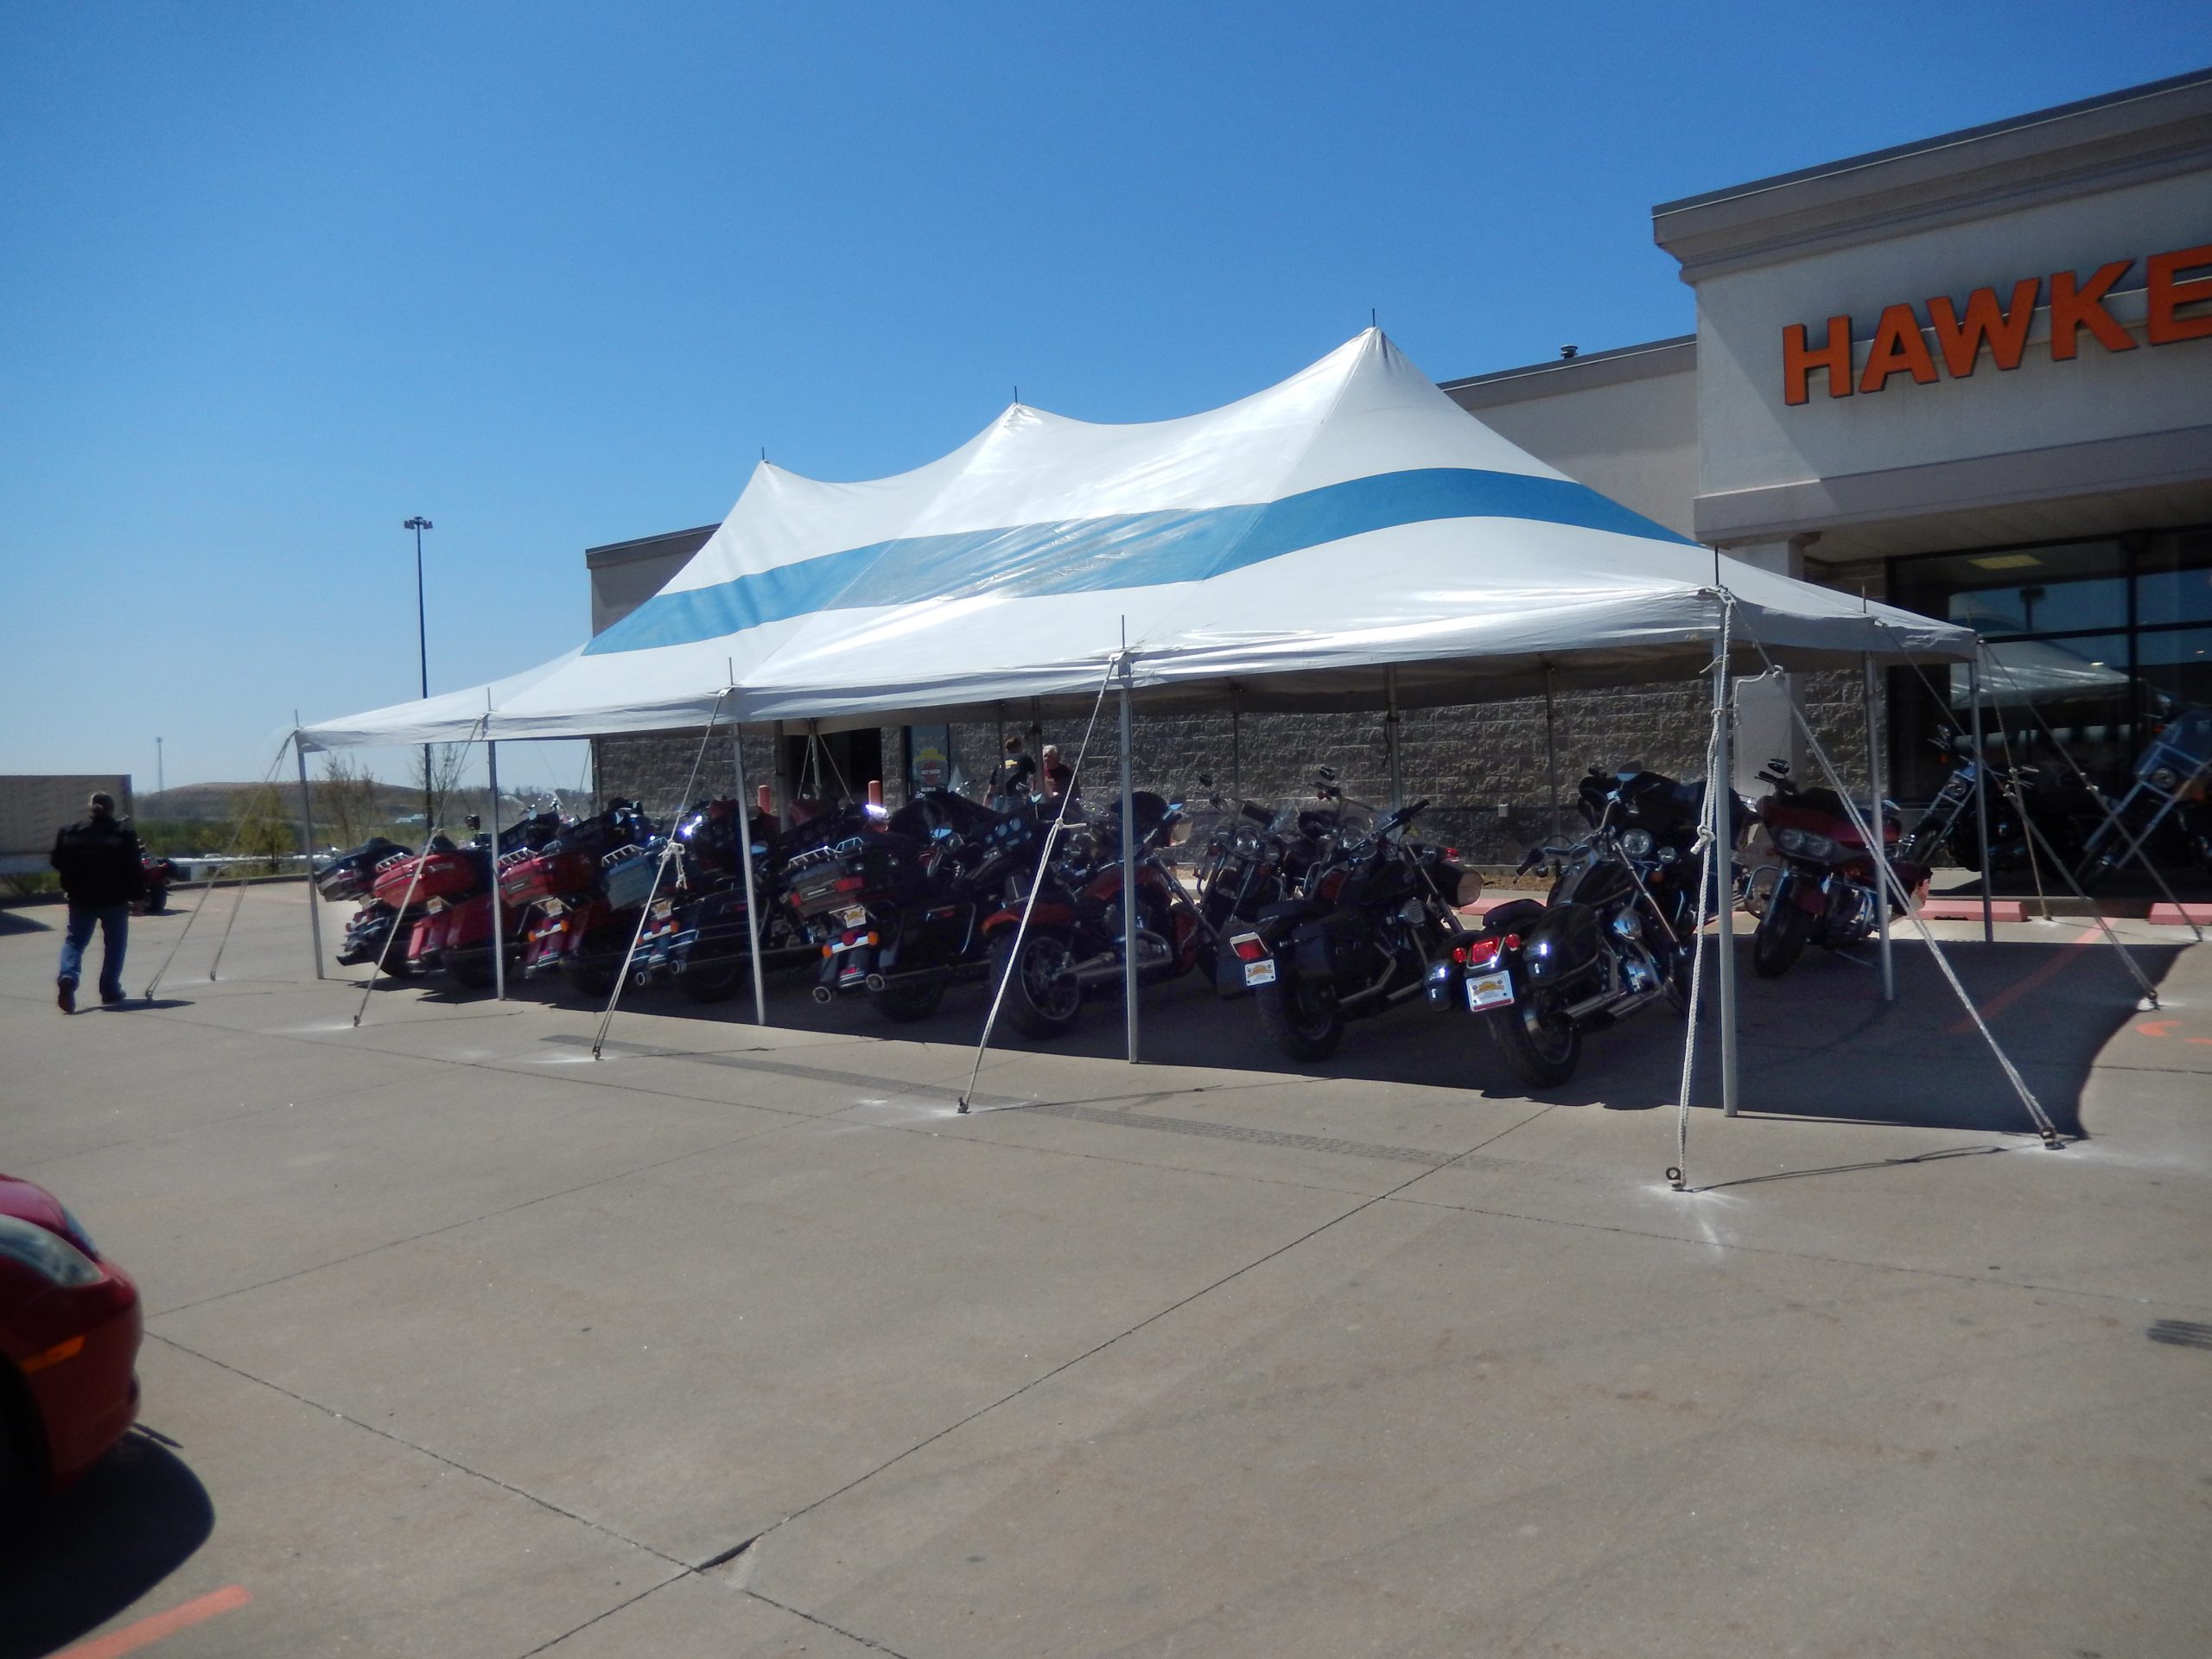 Bikes under event tent at McGrath Hawkeye Harley-Davidson